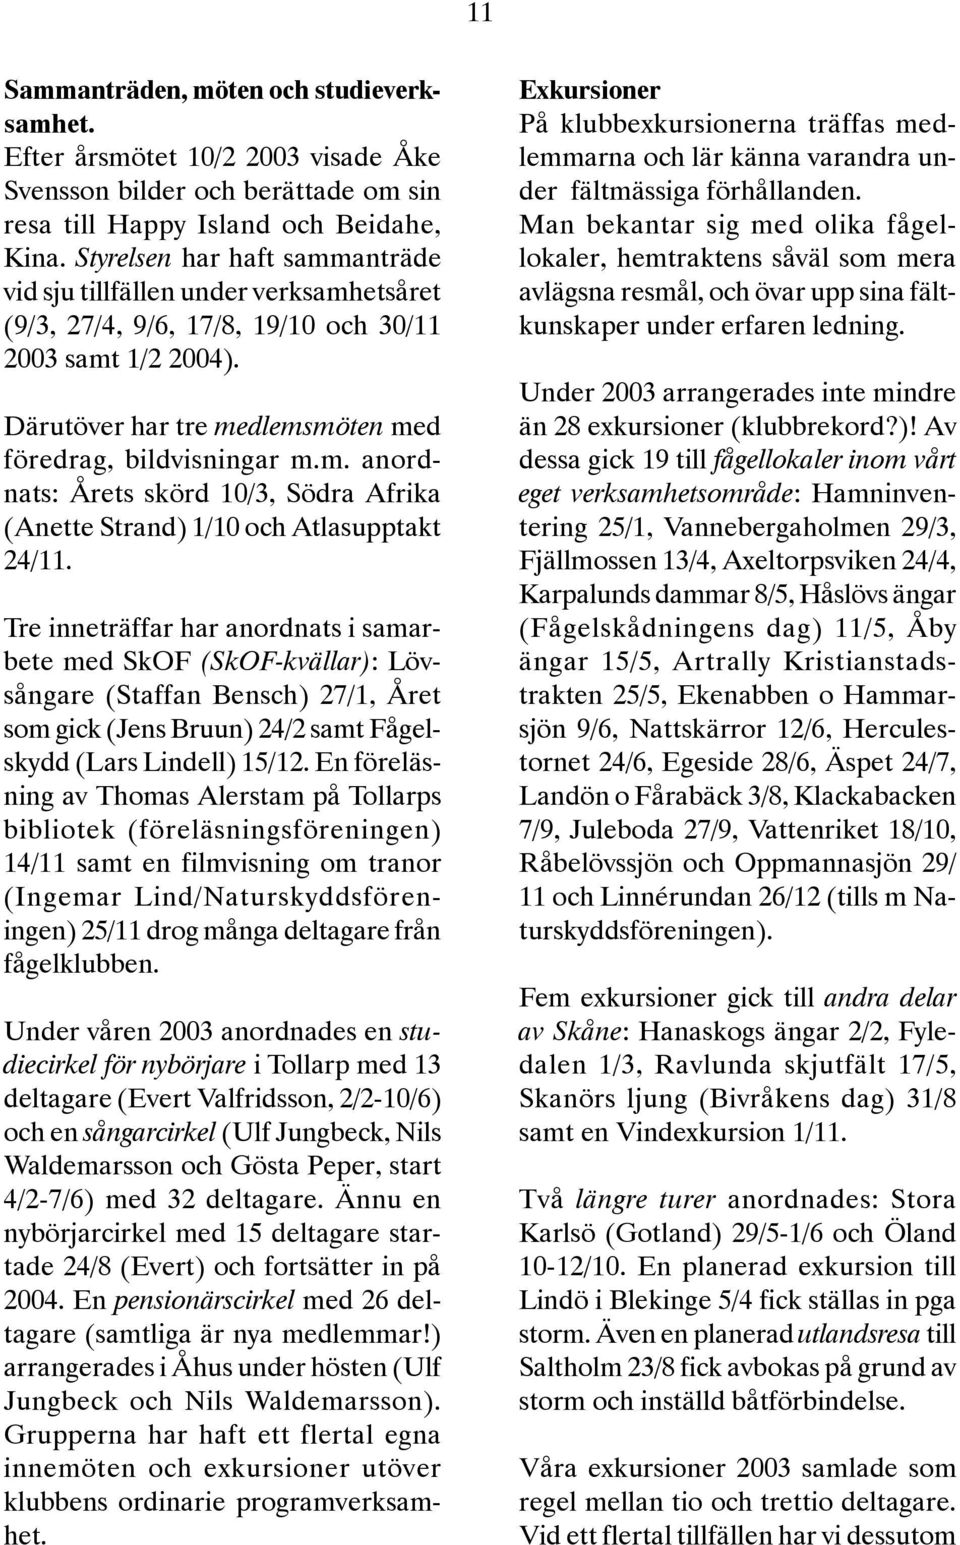 Tre inneträffar har anordnats i samarbete med SkOF (SkOF-kvällar): Lövsångare (Staffan Bensch) 27/1, Året som gick (Jens Bruun) 24/2 samt Fågelskydd (Lars Lindell) 15/12.